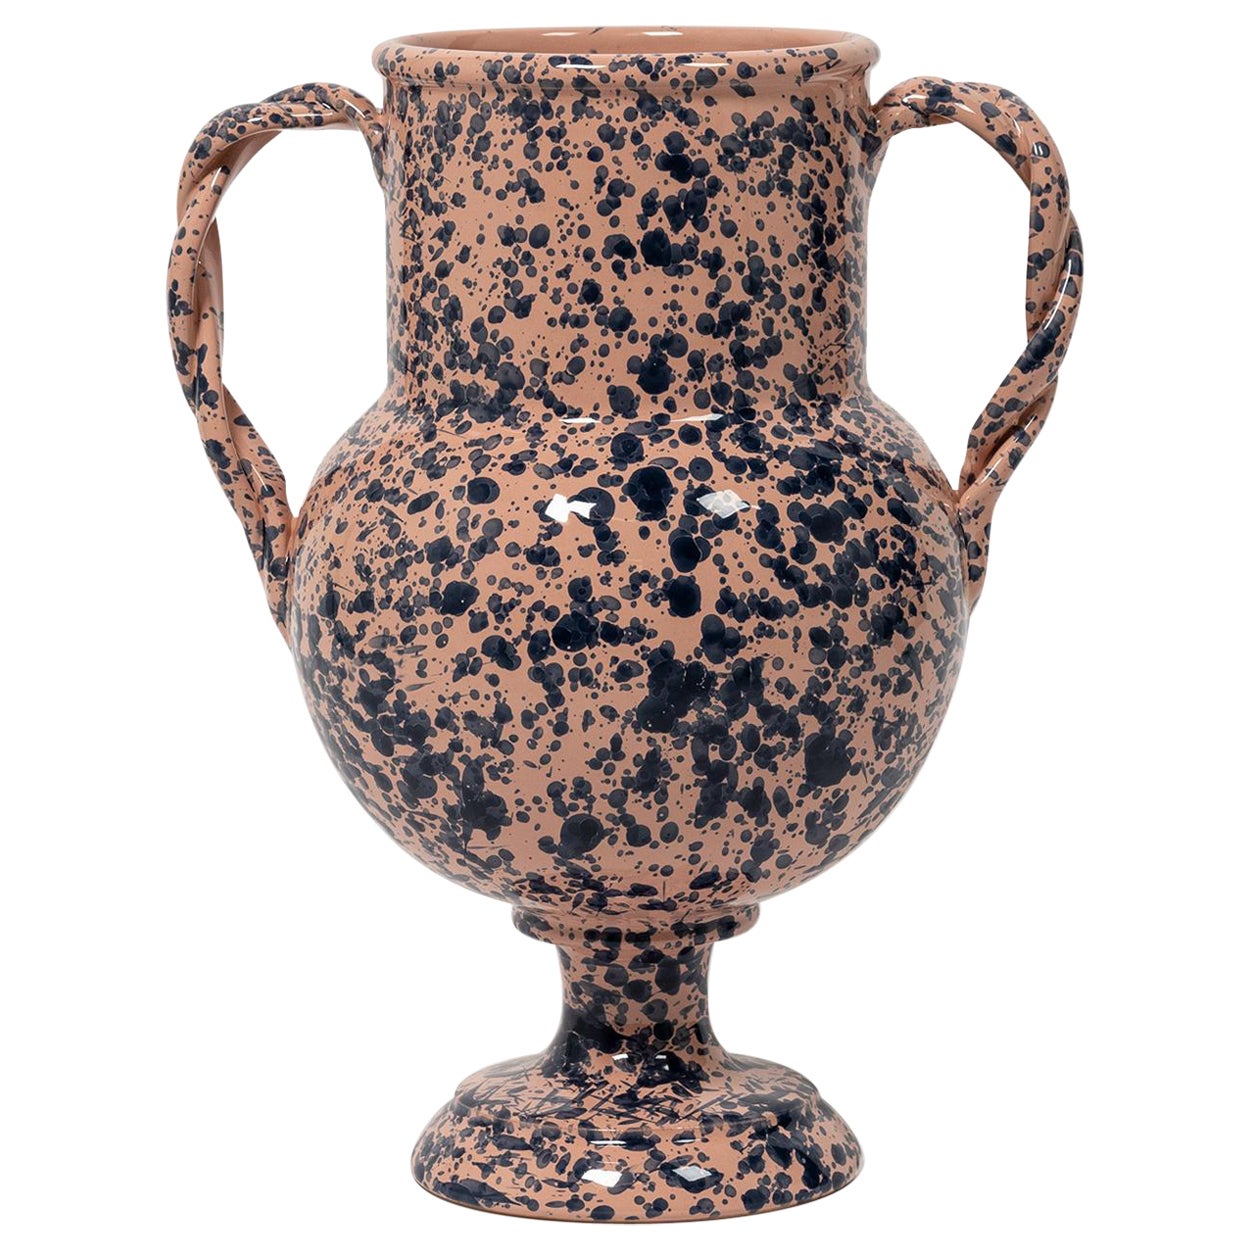 Splatter Vase, ceramic, greek urn inspired, Large, Pink and Blue For Sale